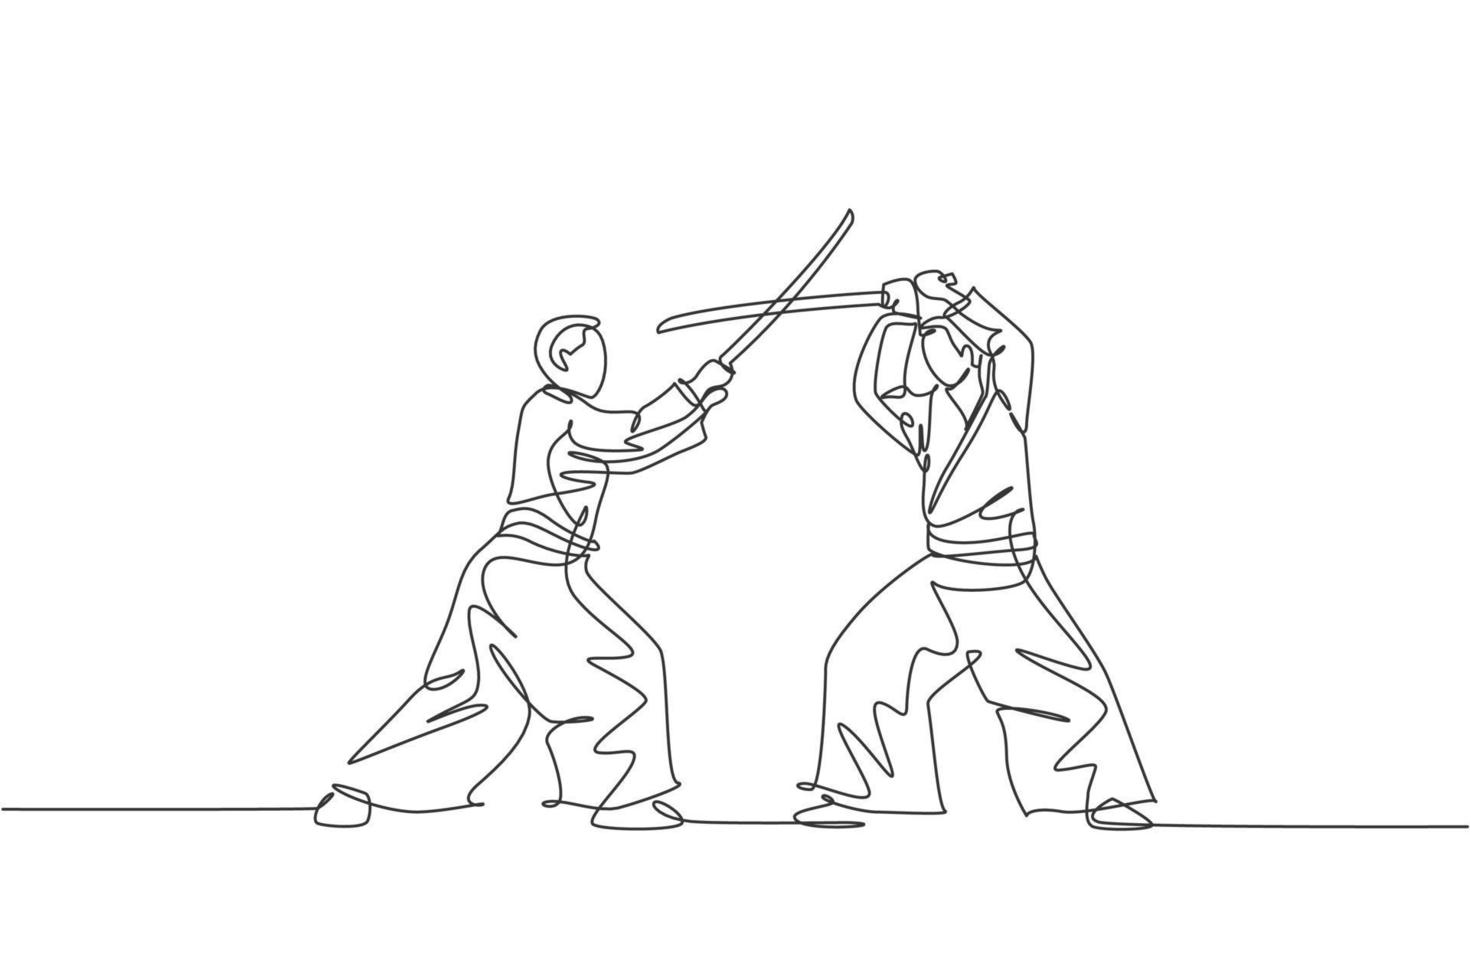 en kontinuerlig linje ritning av ung man aikido fighter övning med träsvärd på dojo träningscenter. kampsport kampsport koncept. dynamisk enkel linje rita design vektor illustration